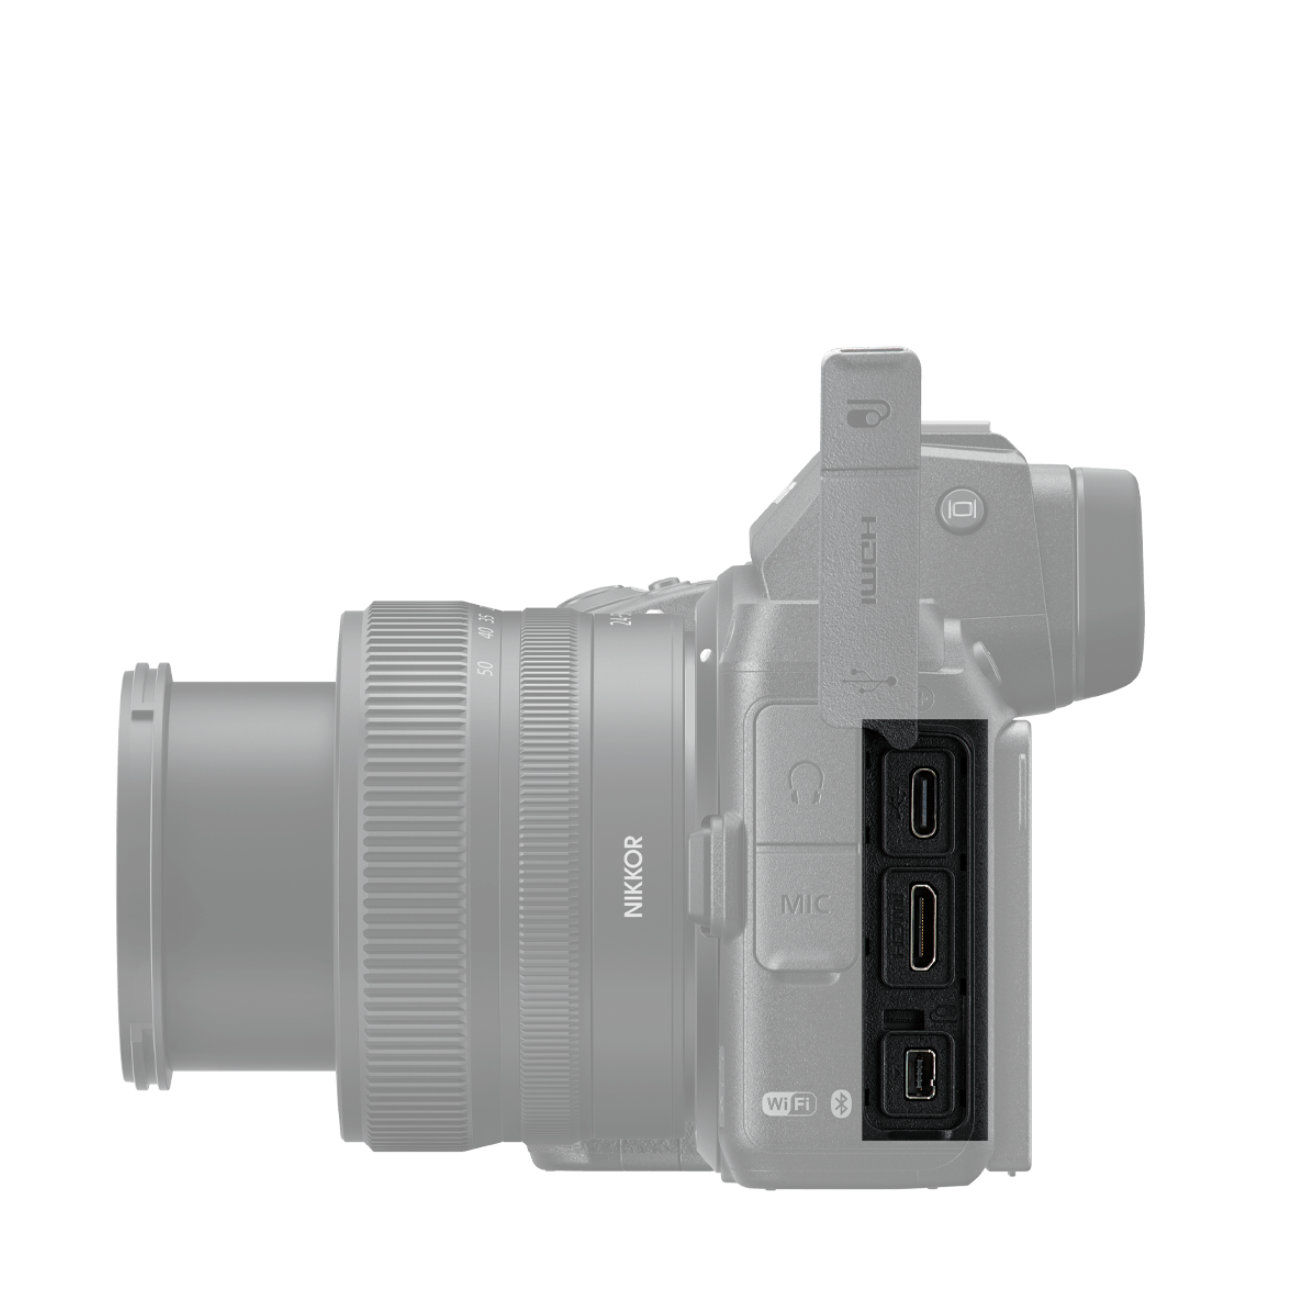 Nikon Z 50 + DX 18-140 VR